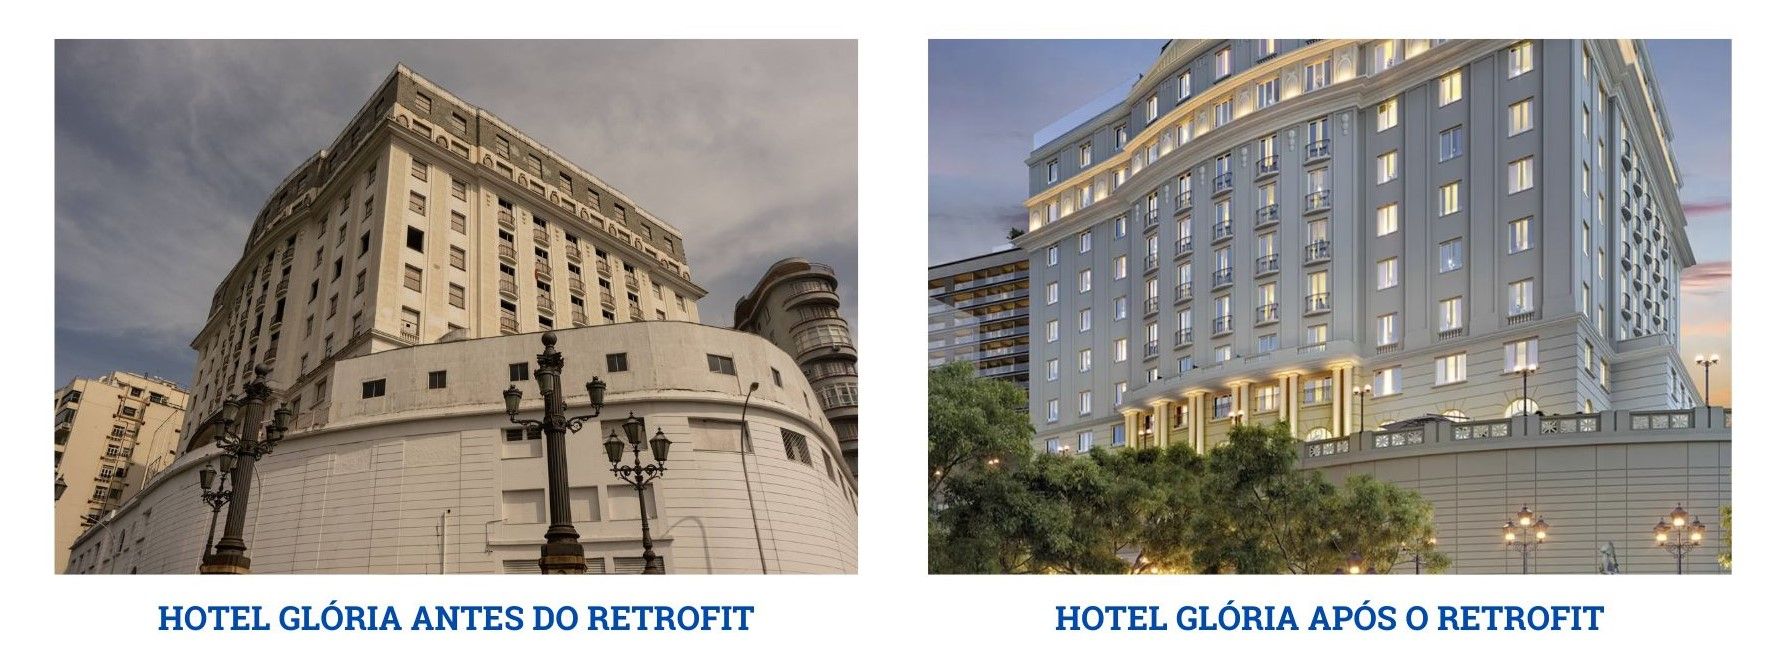 Comparação do Hotel Glória antes e depois do projeto de retrofit.